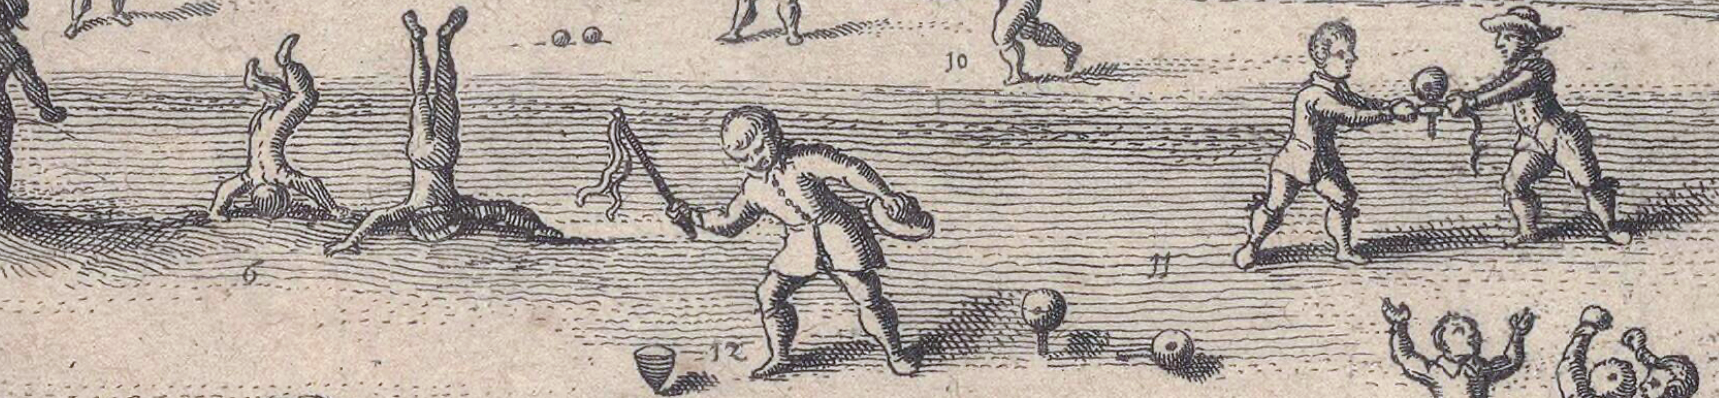 Ausschnitt aus einem alten Stich von 1632 mit Kinderspiel-Szenen, in der Mitte ein Junge mit Peitschenkreisel